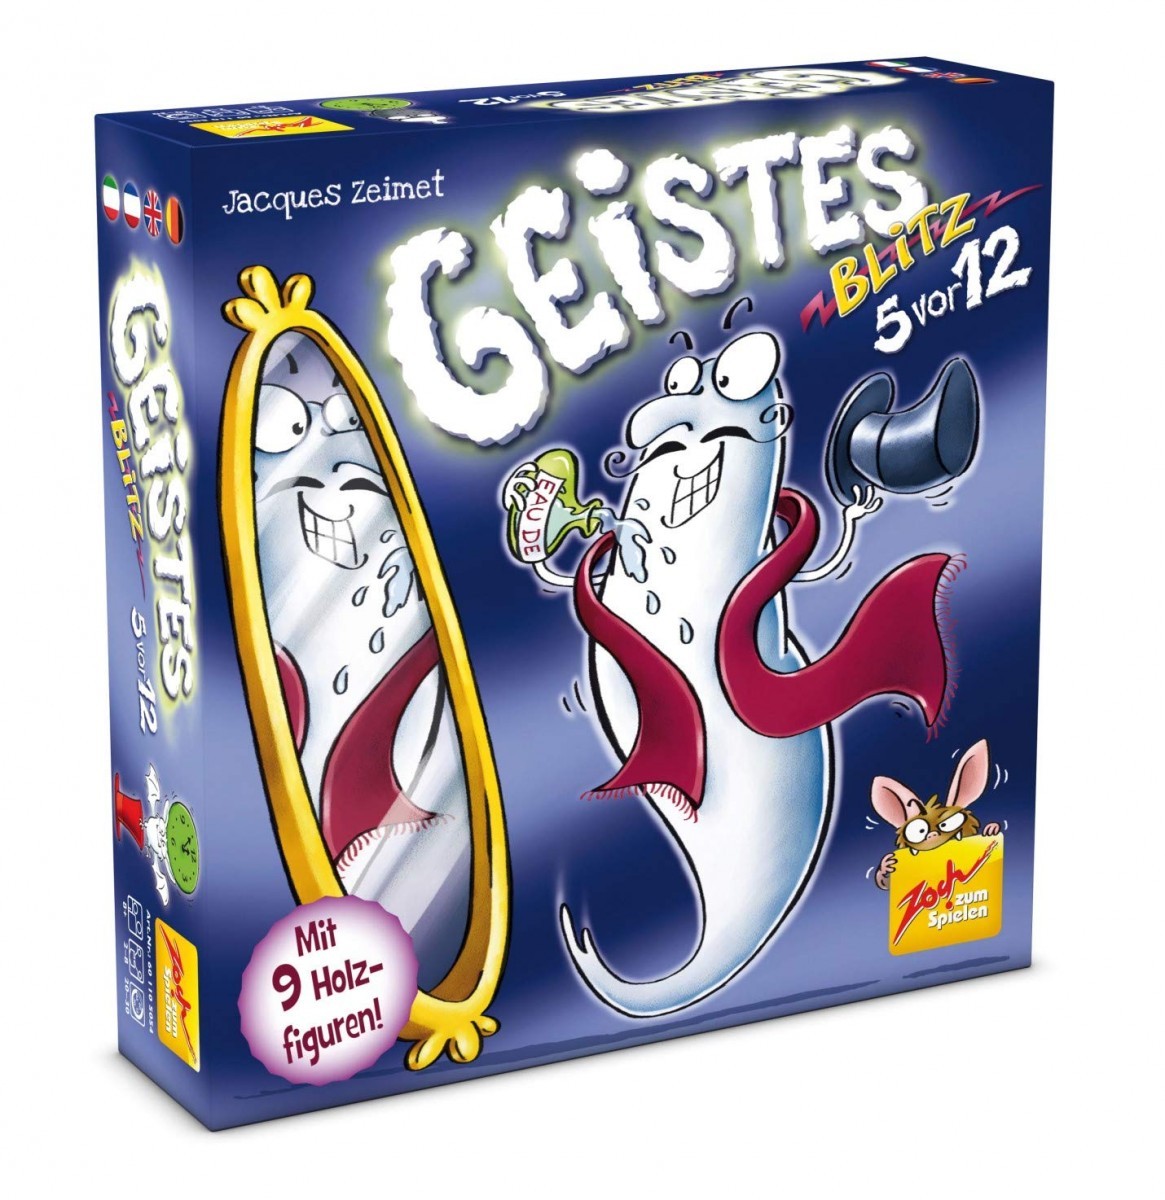 ツォッホ社 おばけキャッチ名人技 （Geisterblitz 5 vor 12） ボードゲーム ボードゲームの商品画像